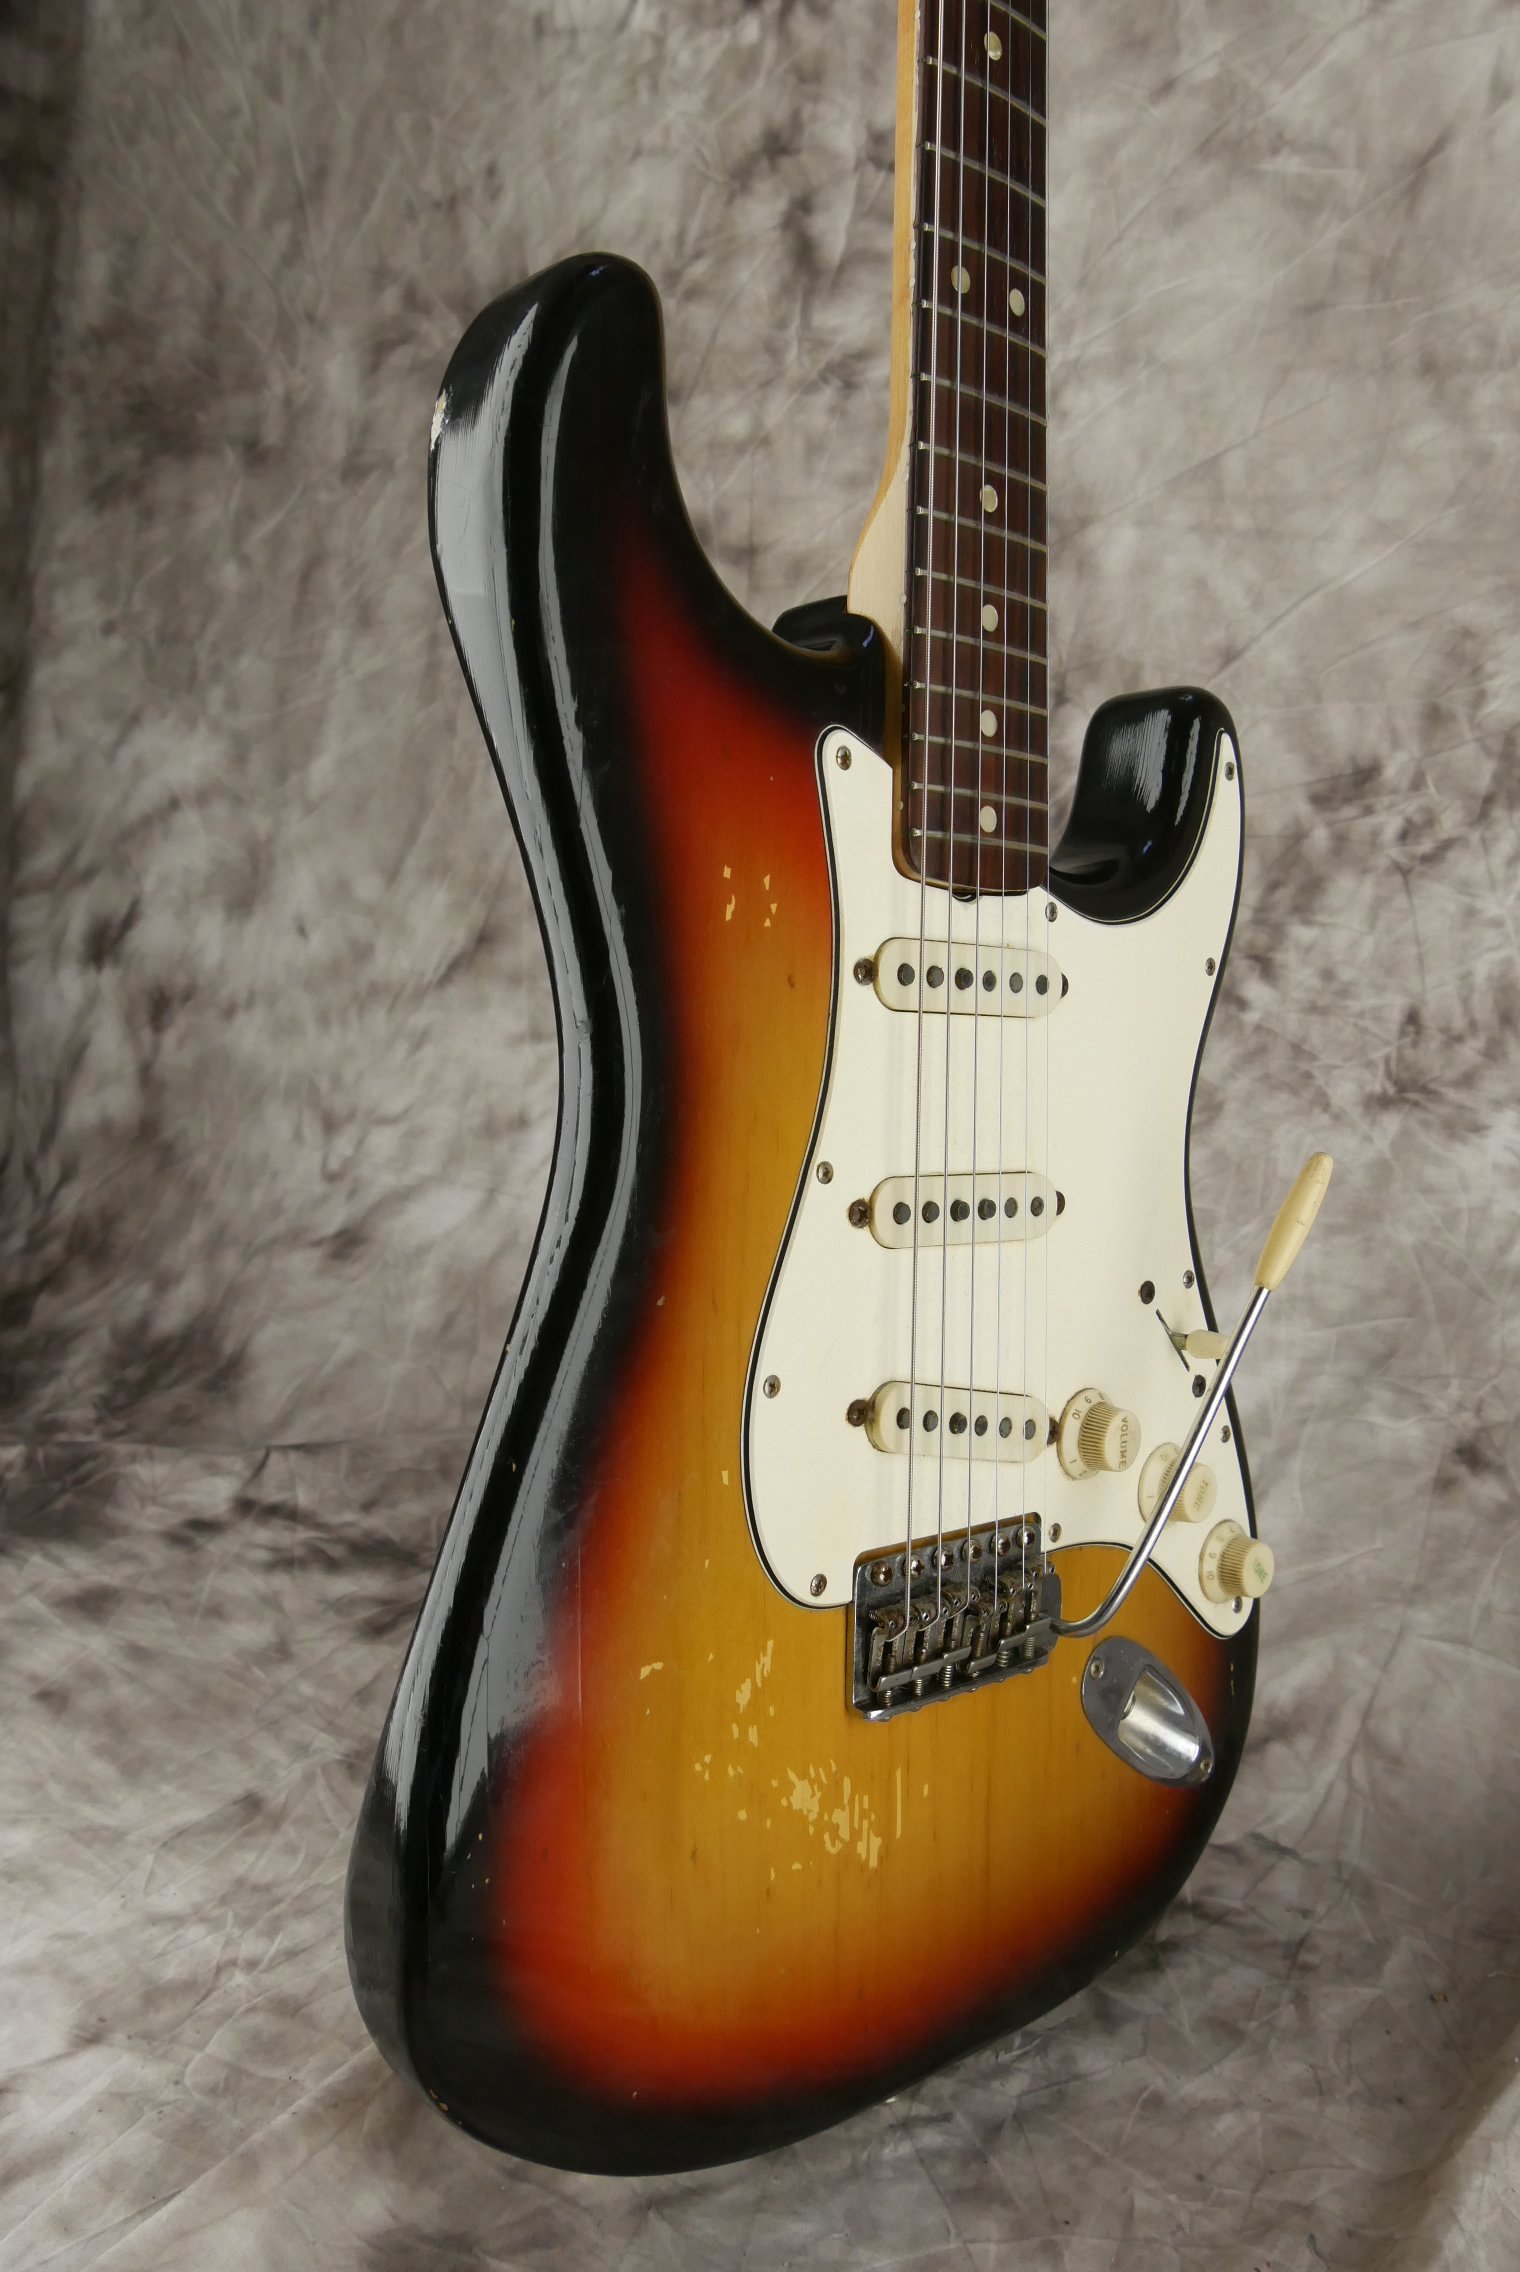 Fender_Stratocaster-1970_sunburst-tremolo-005.JPG